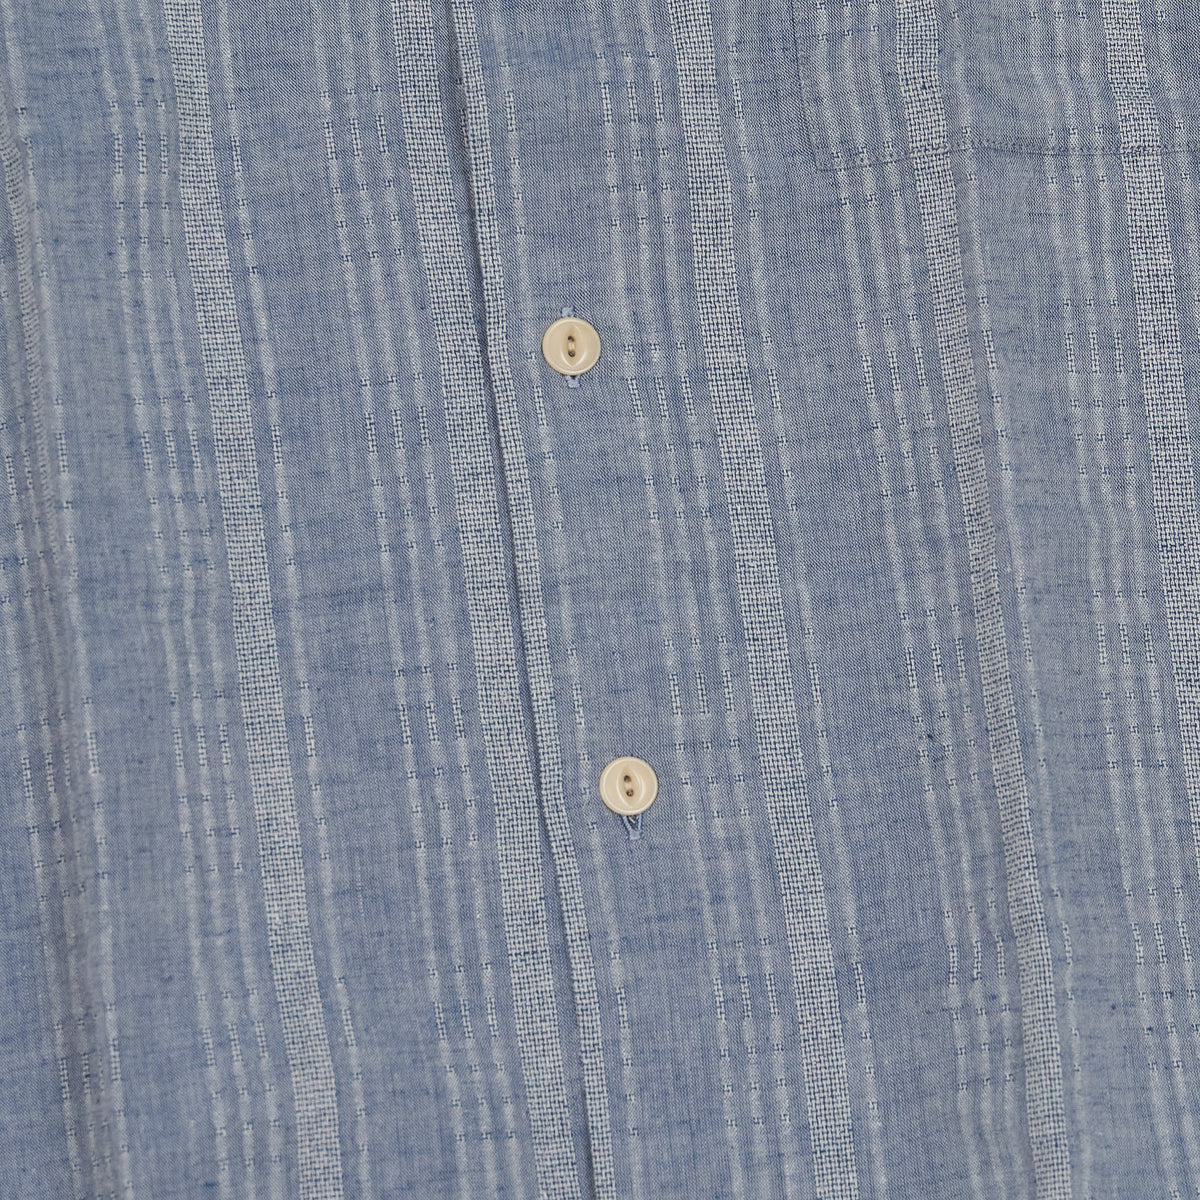 A.B.C.L Long Sleeve Cotton/ Linen Shirt Japanese Fabric